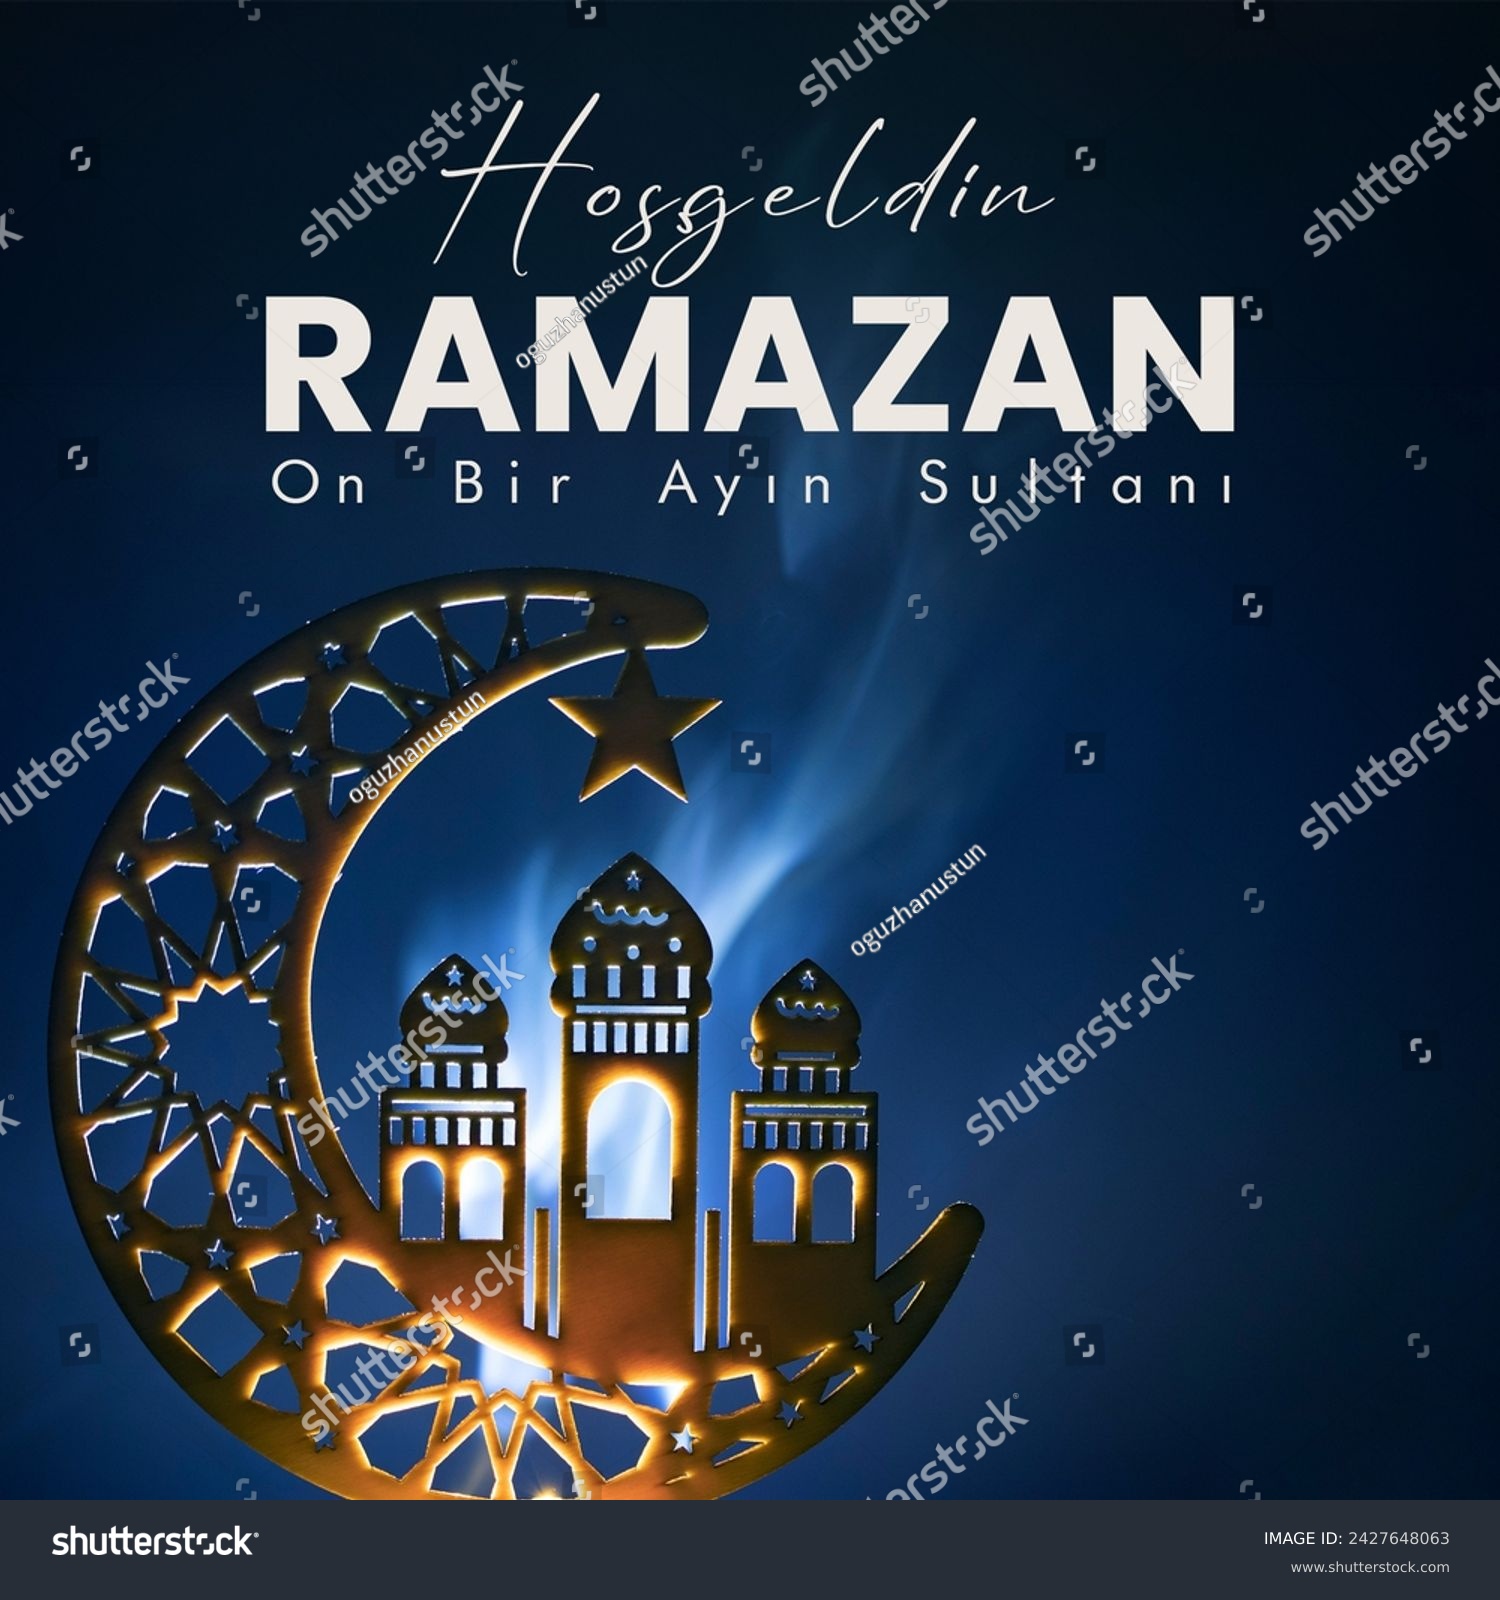 Hoş geldin ya şehri Ramazan. Welcome to Ramadan post  #2427648063